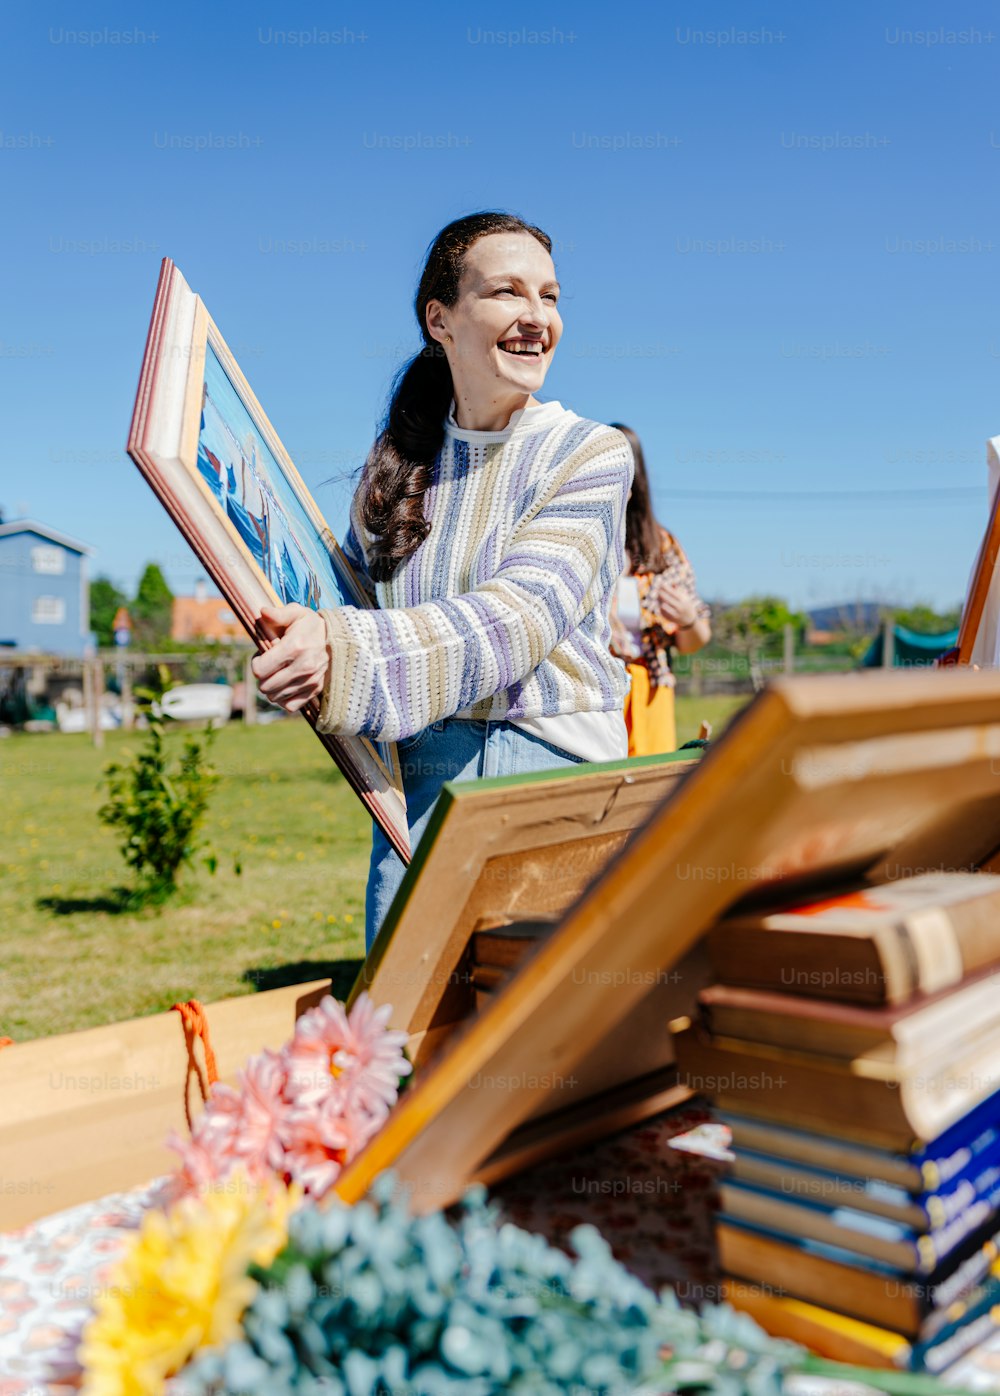 une femme tenant un cadre photo devant une pile de livres